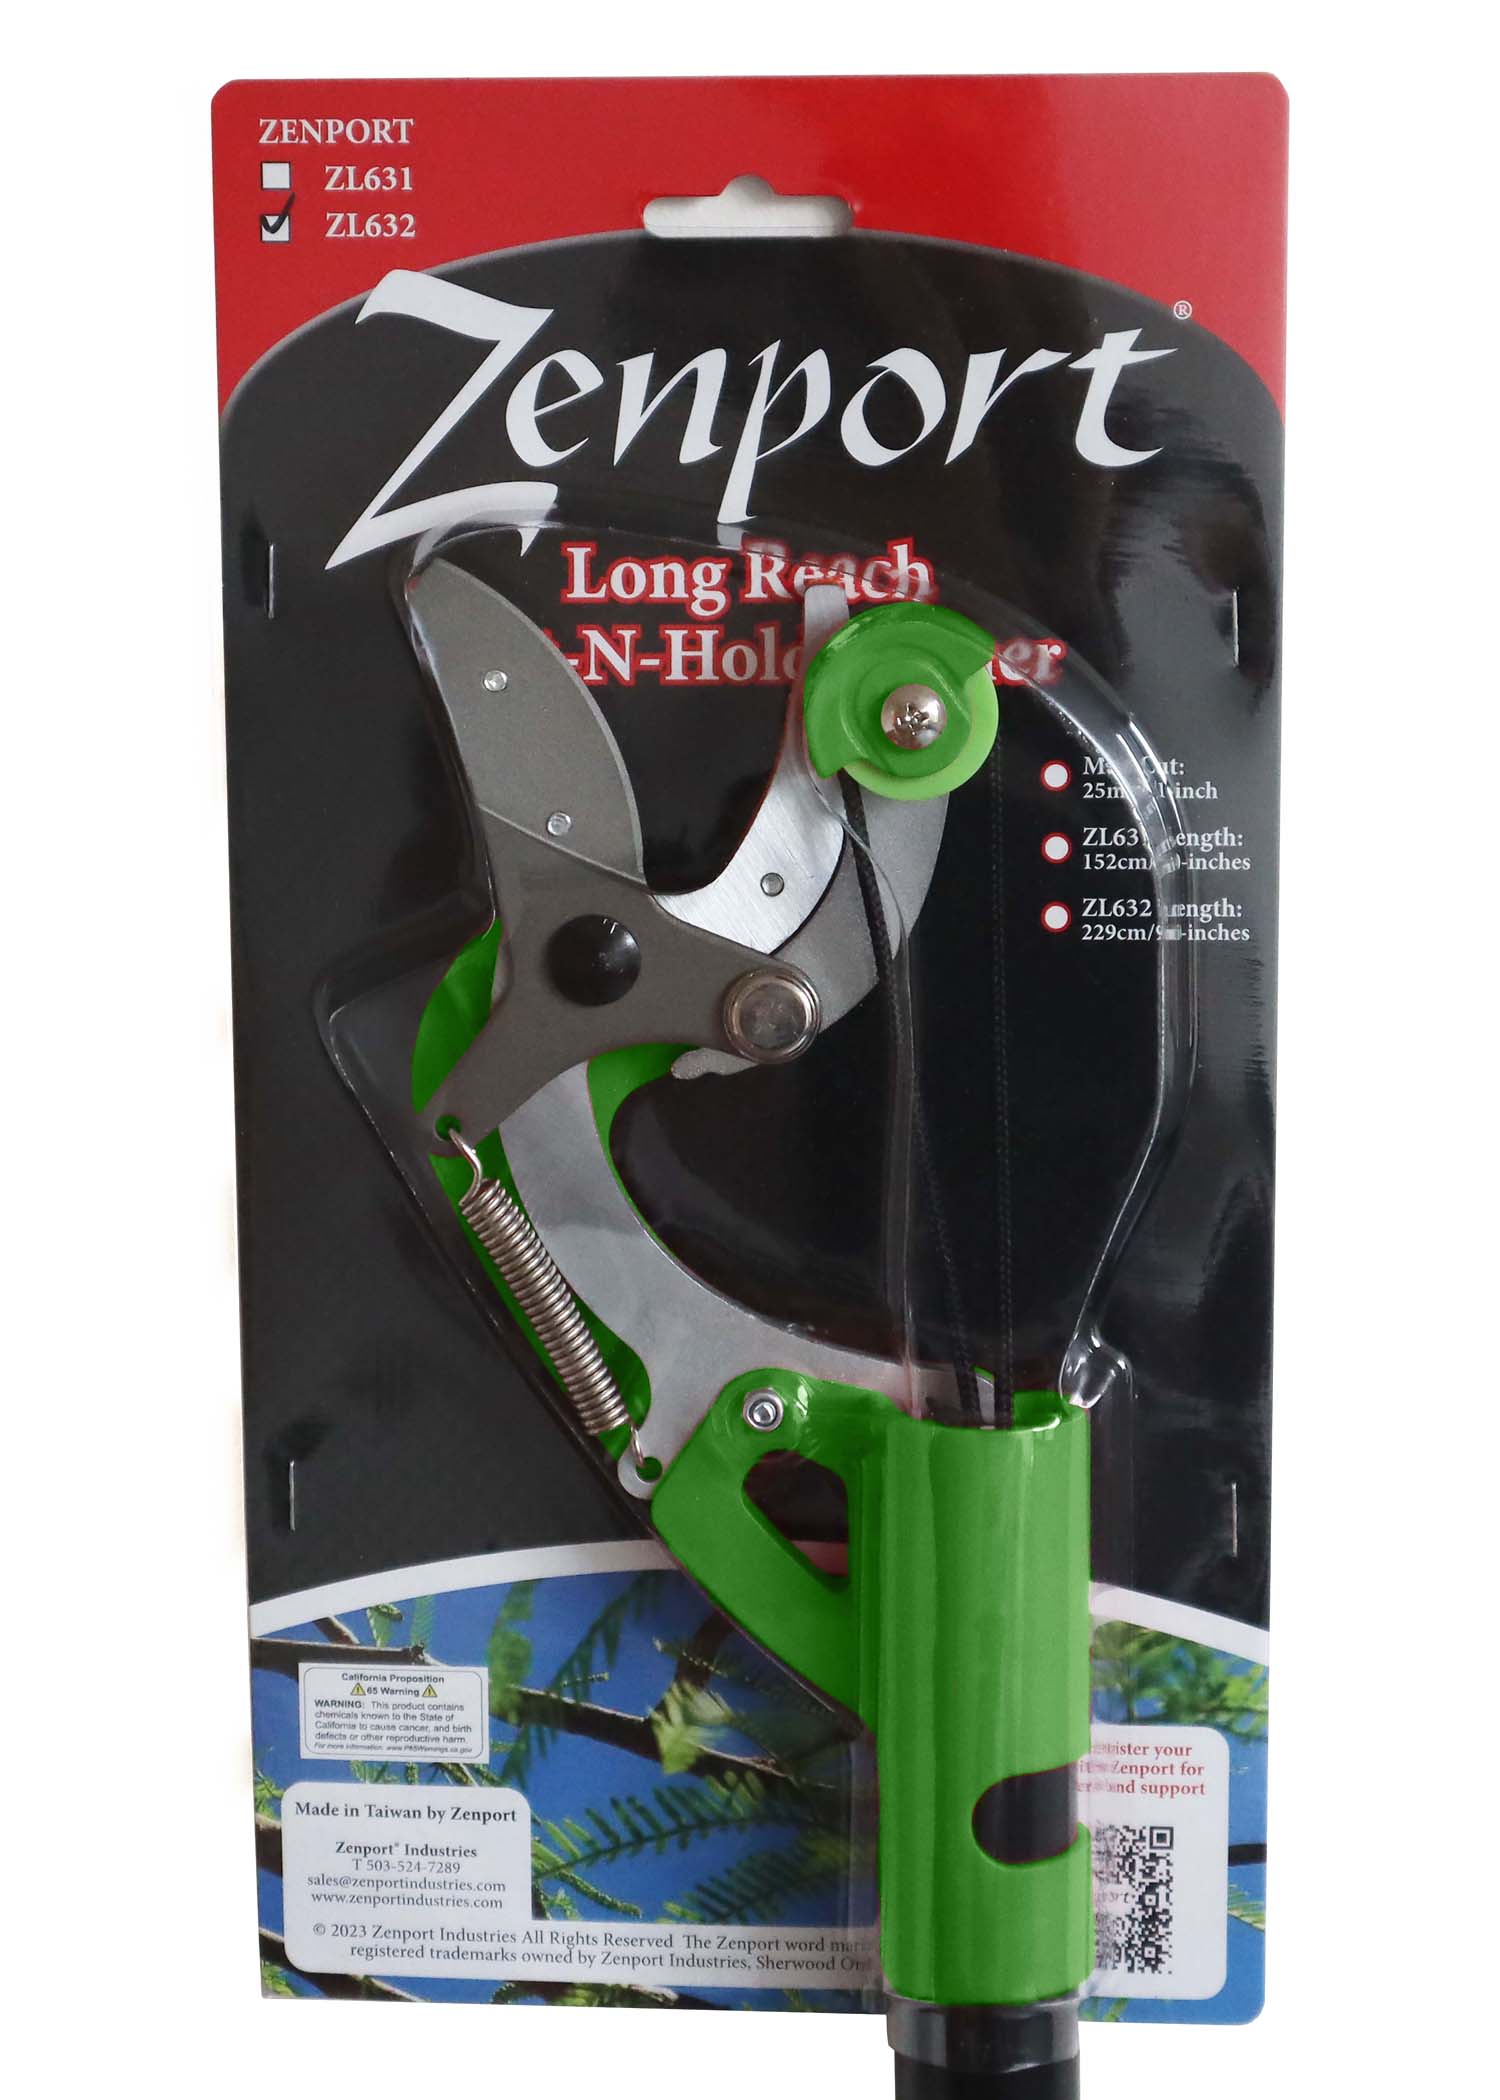 Podadora de poste Zenport ZL632 de 90 pulgadas, corte de 0,5 pulgadas, corta y sujeta, acción de bomba, cordón de tracción, para la poda de árboles frutales